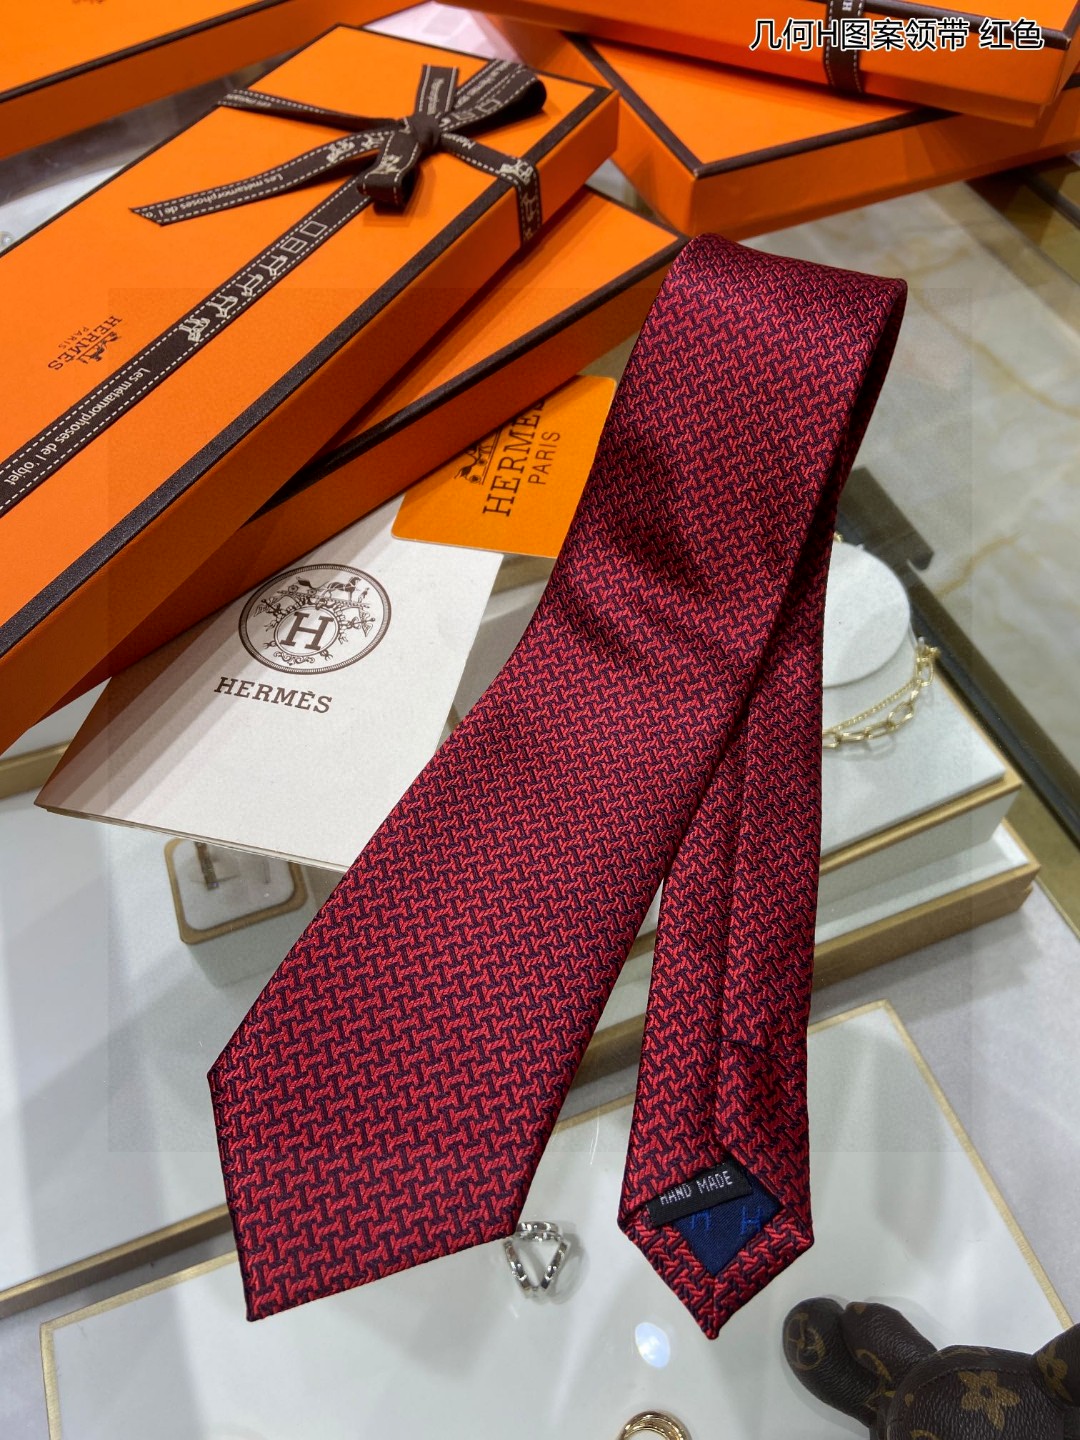 男士新款领带系列几何H图案领带稀有H家每年都有一千条不同印花的领带面世从最初的多以几何图案表现骑术活动为